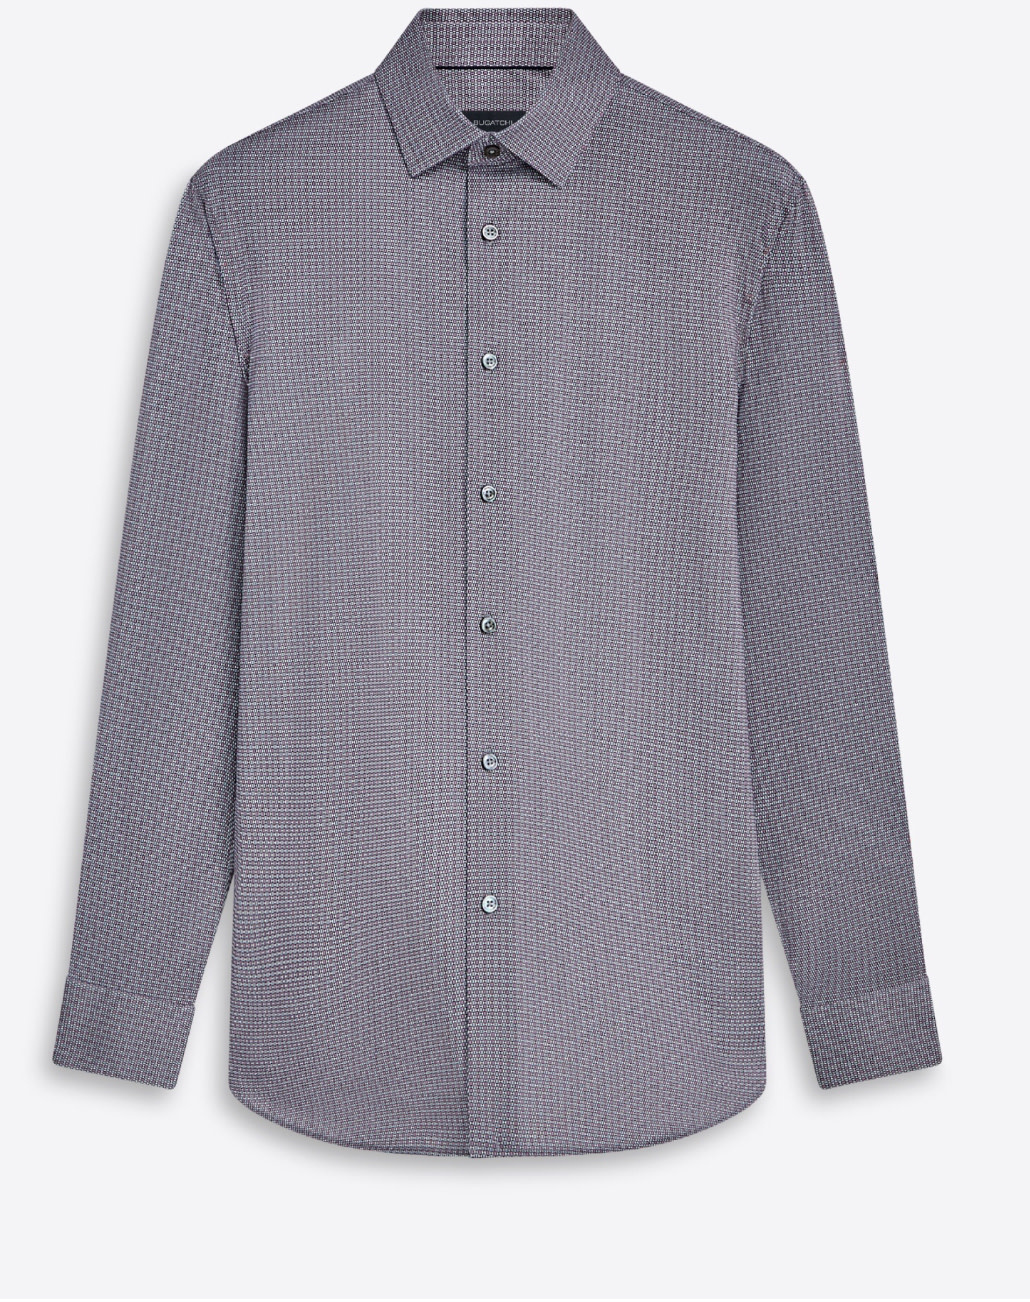 BUGATCHI Modern Fit Pink Grey shirt - Benjamin's Menswear